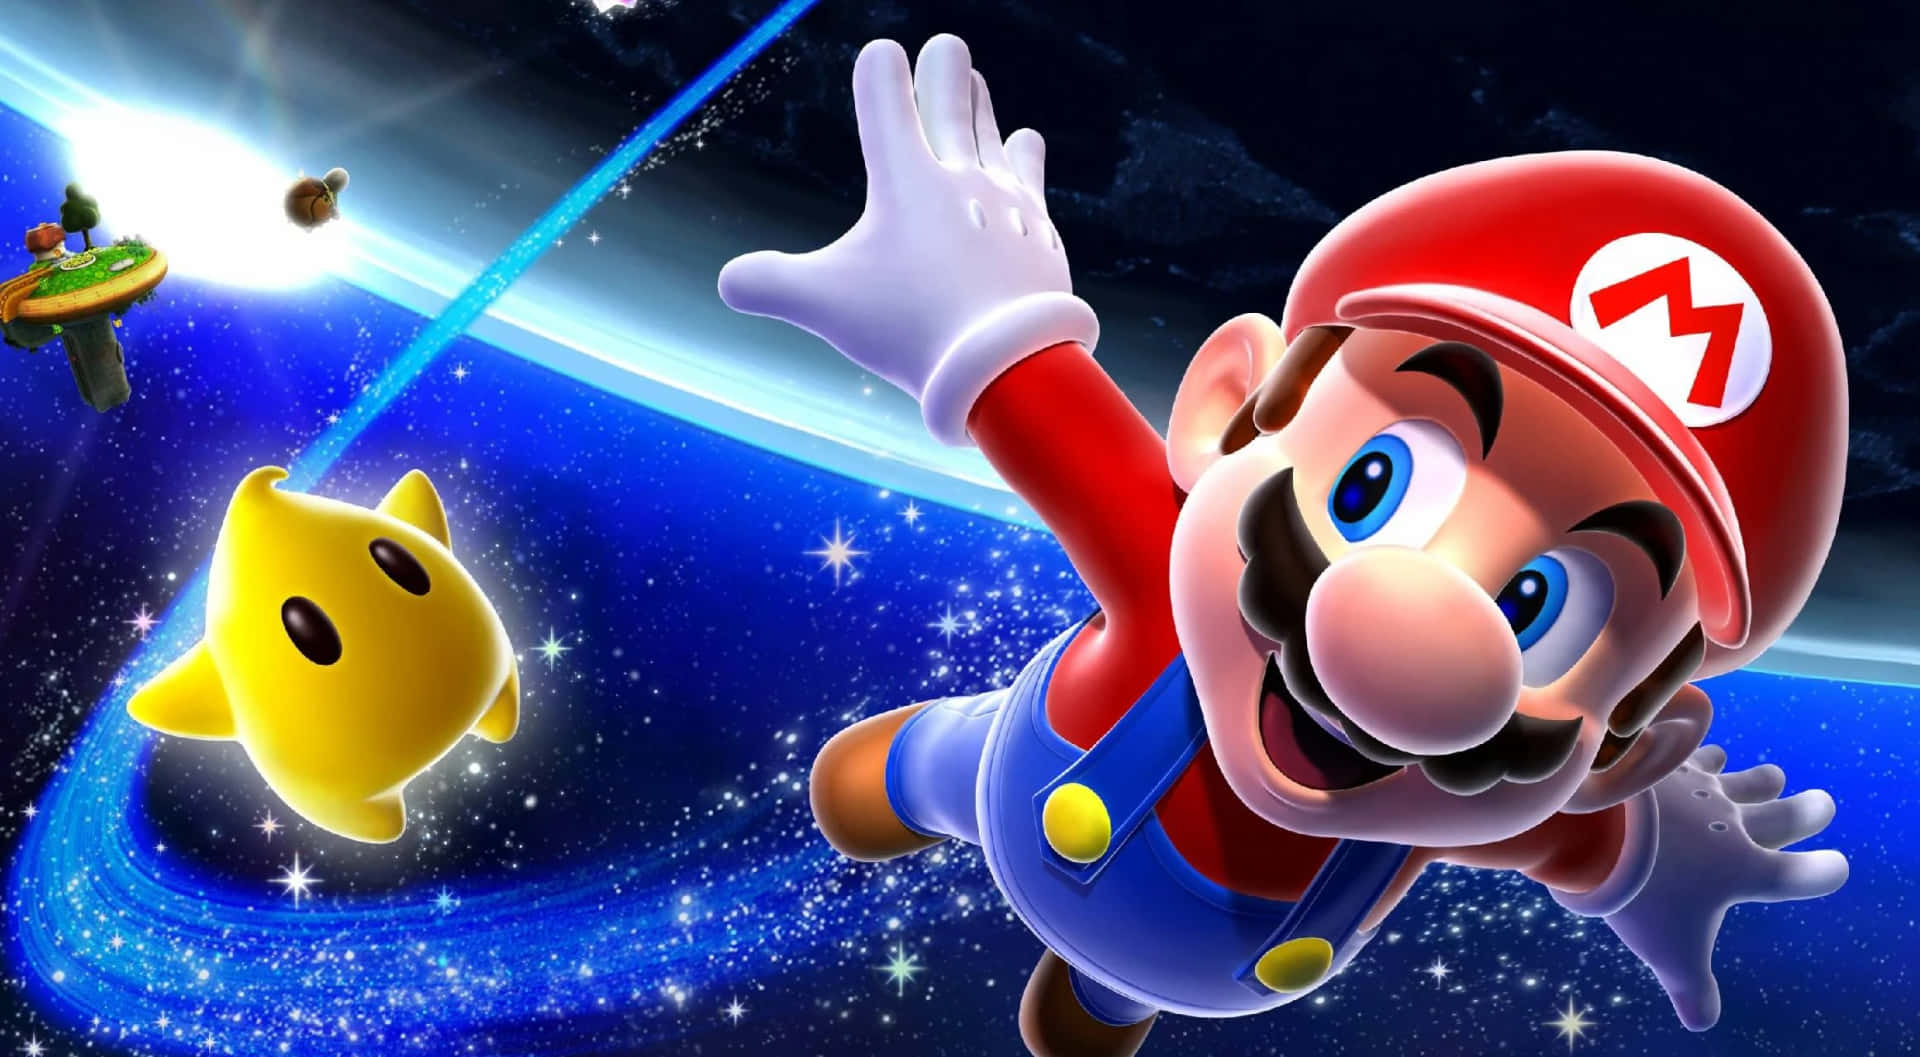 Udforskverdenen Af Nintendo Med Spil Som The Legend Of Zelda Og Mario Kart.